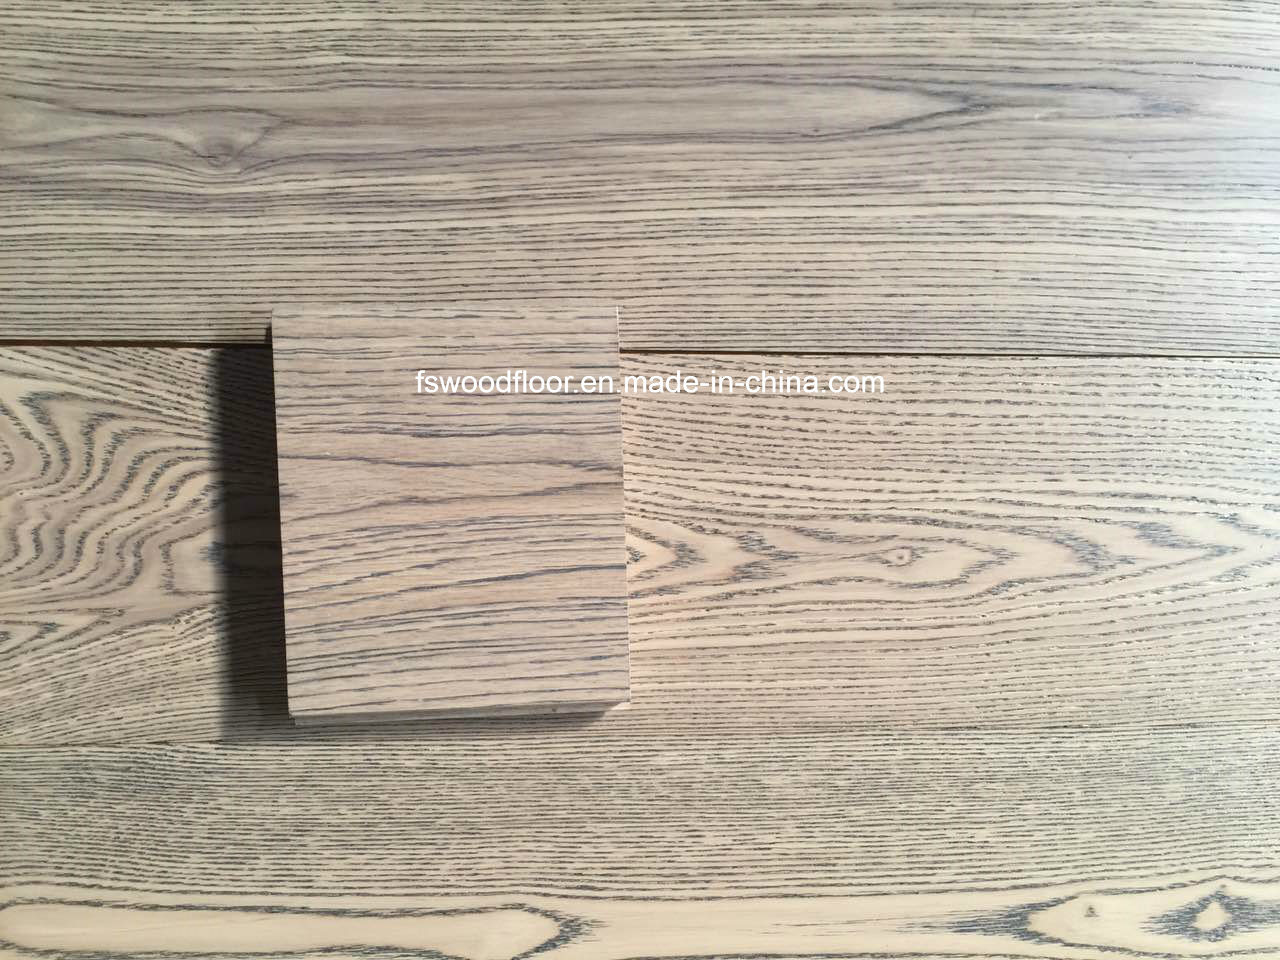 15-18mm Thickness Light Gray Wide Plank Engineered Wood Flooring